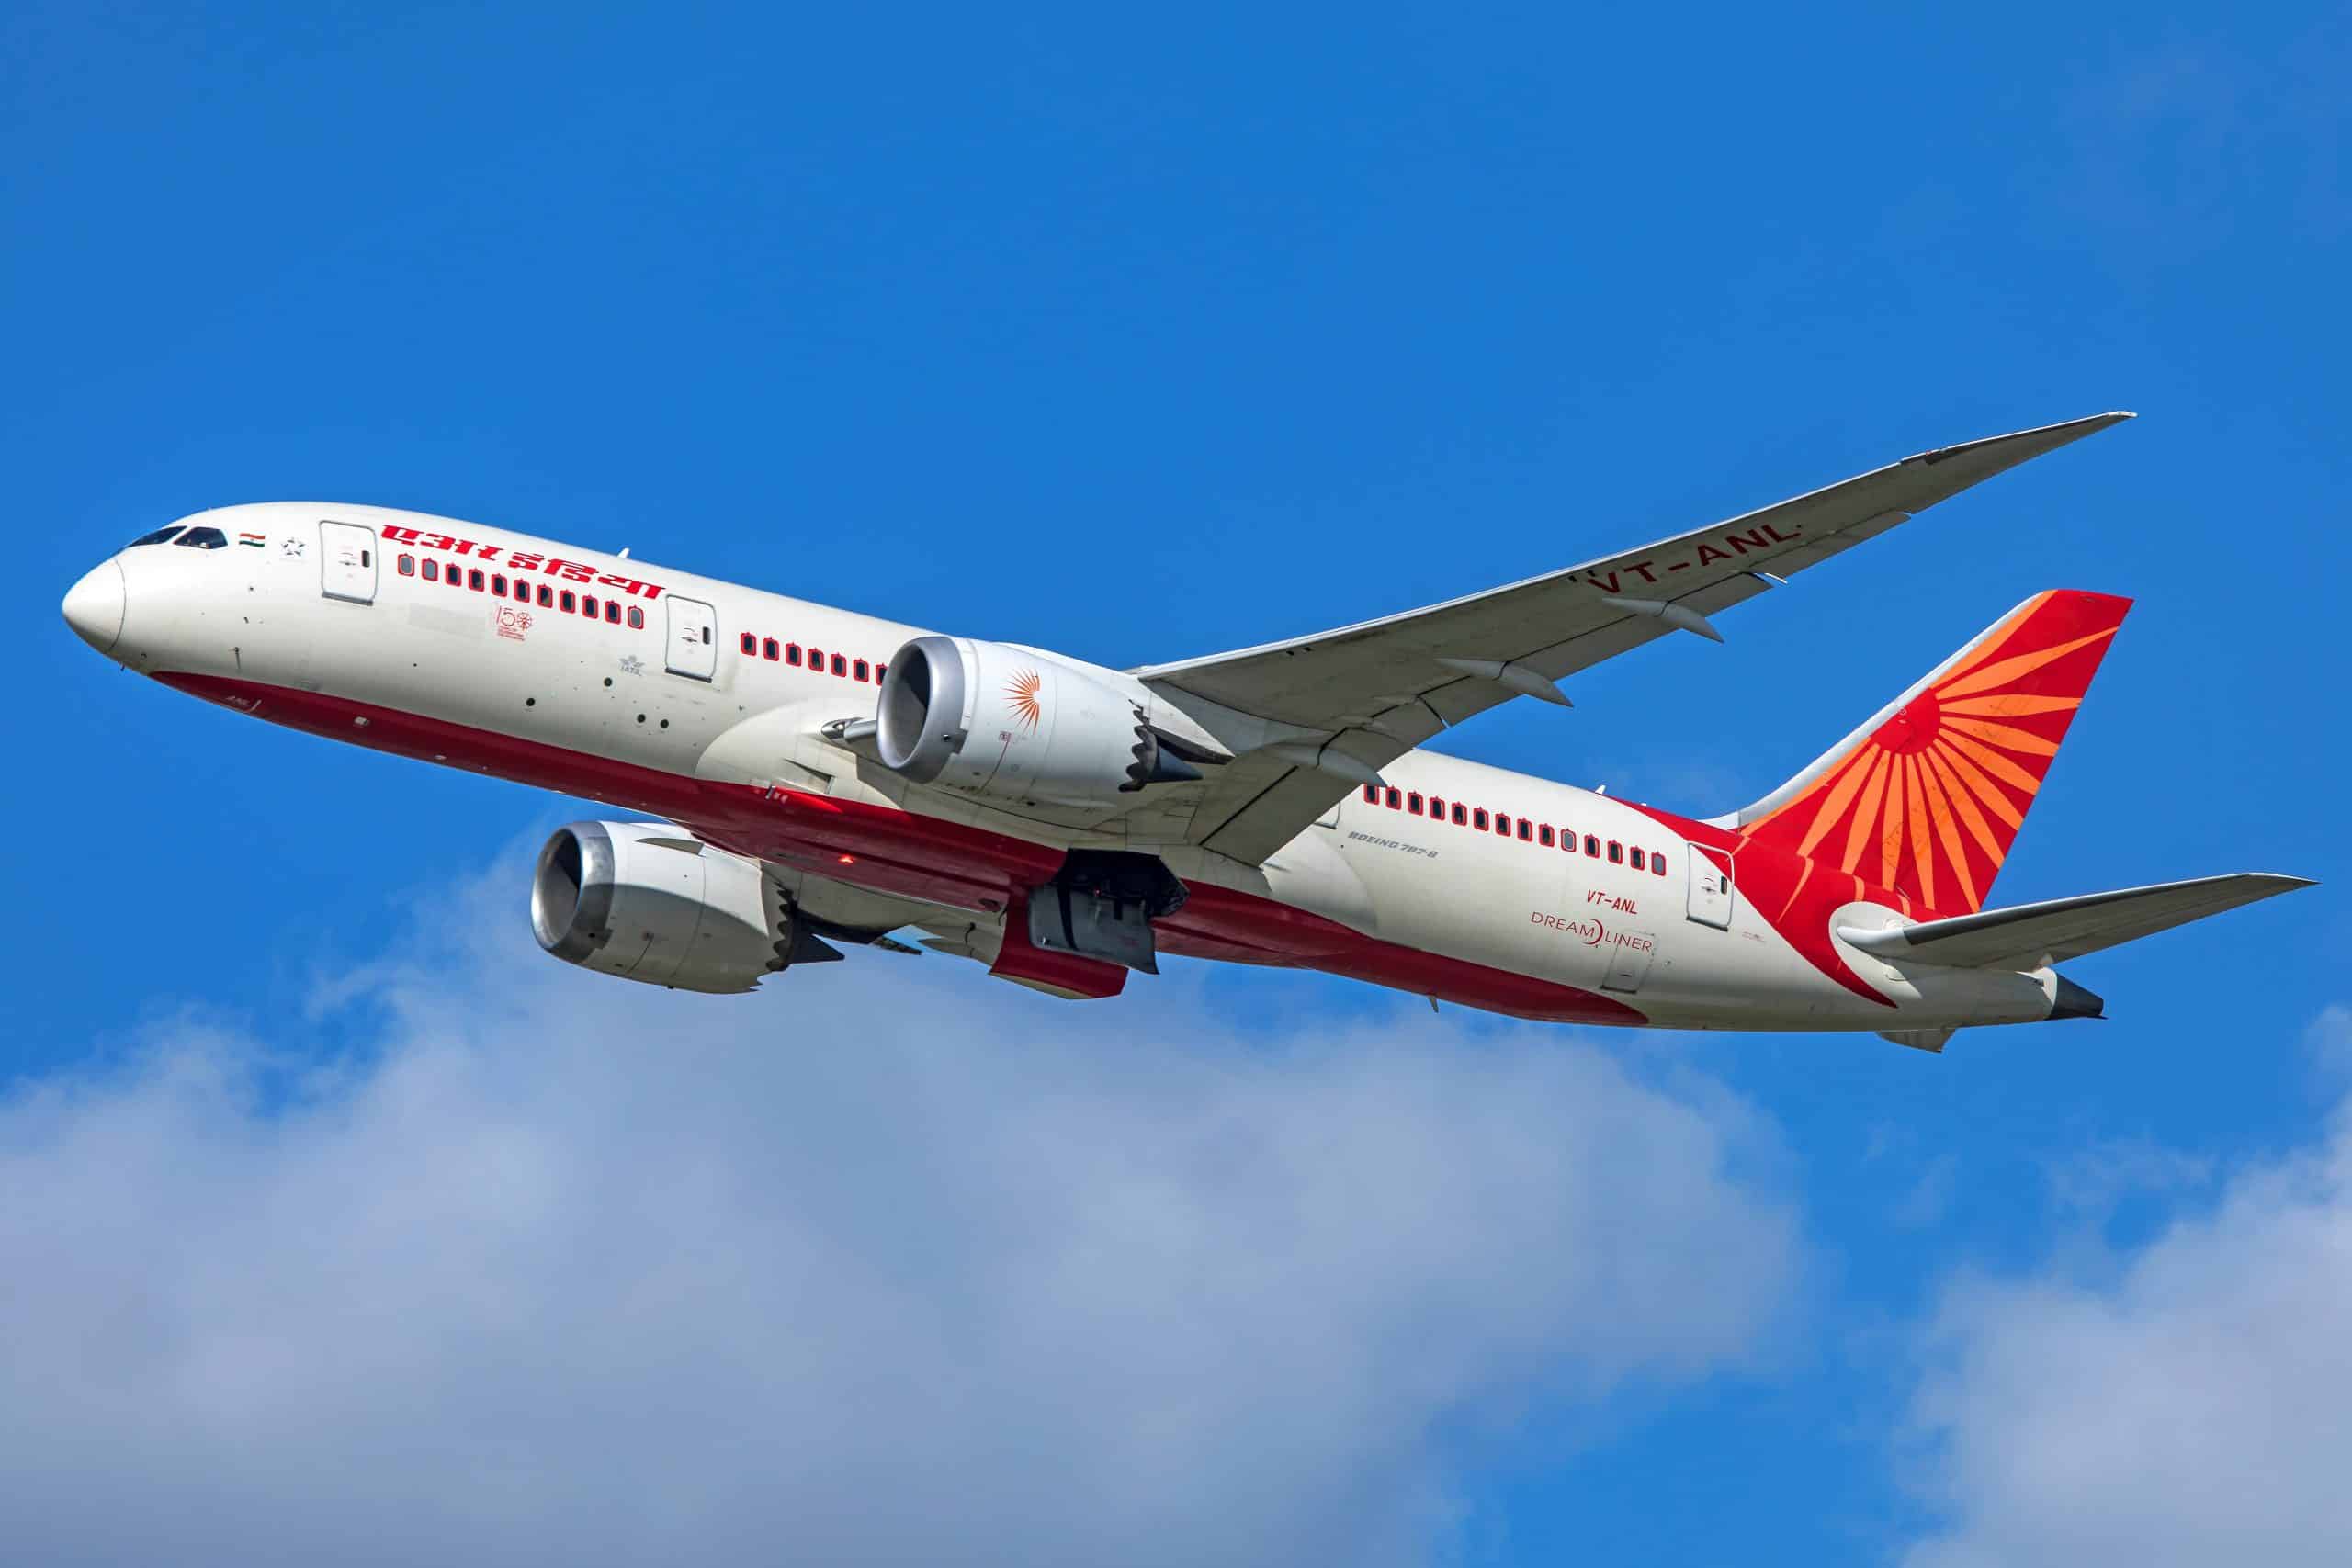 A First: Women crew set to pilot Air India’s flight San Francisco - Bengaluru